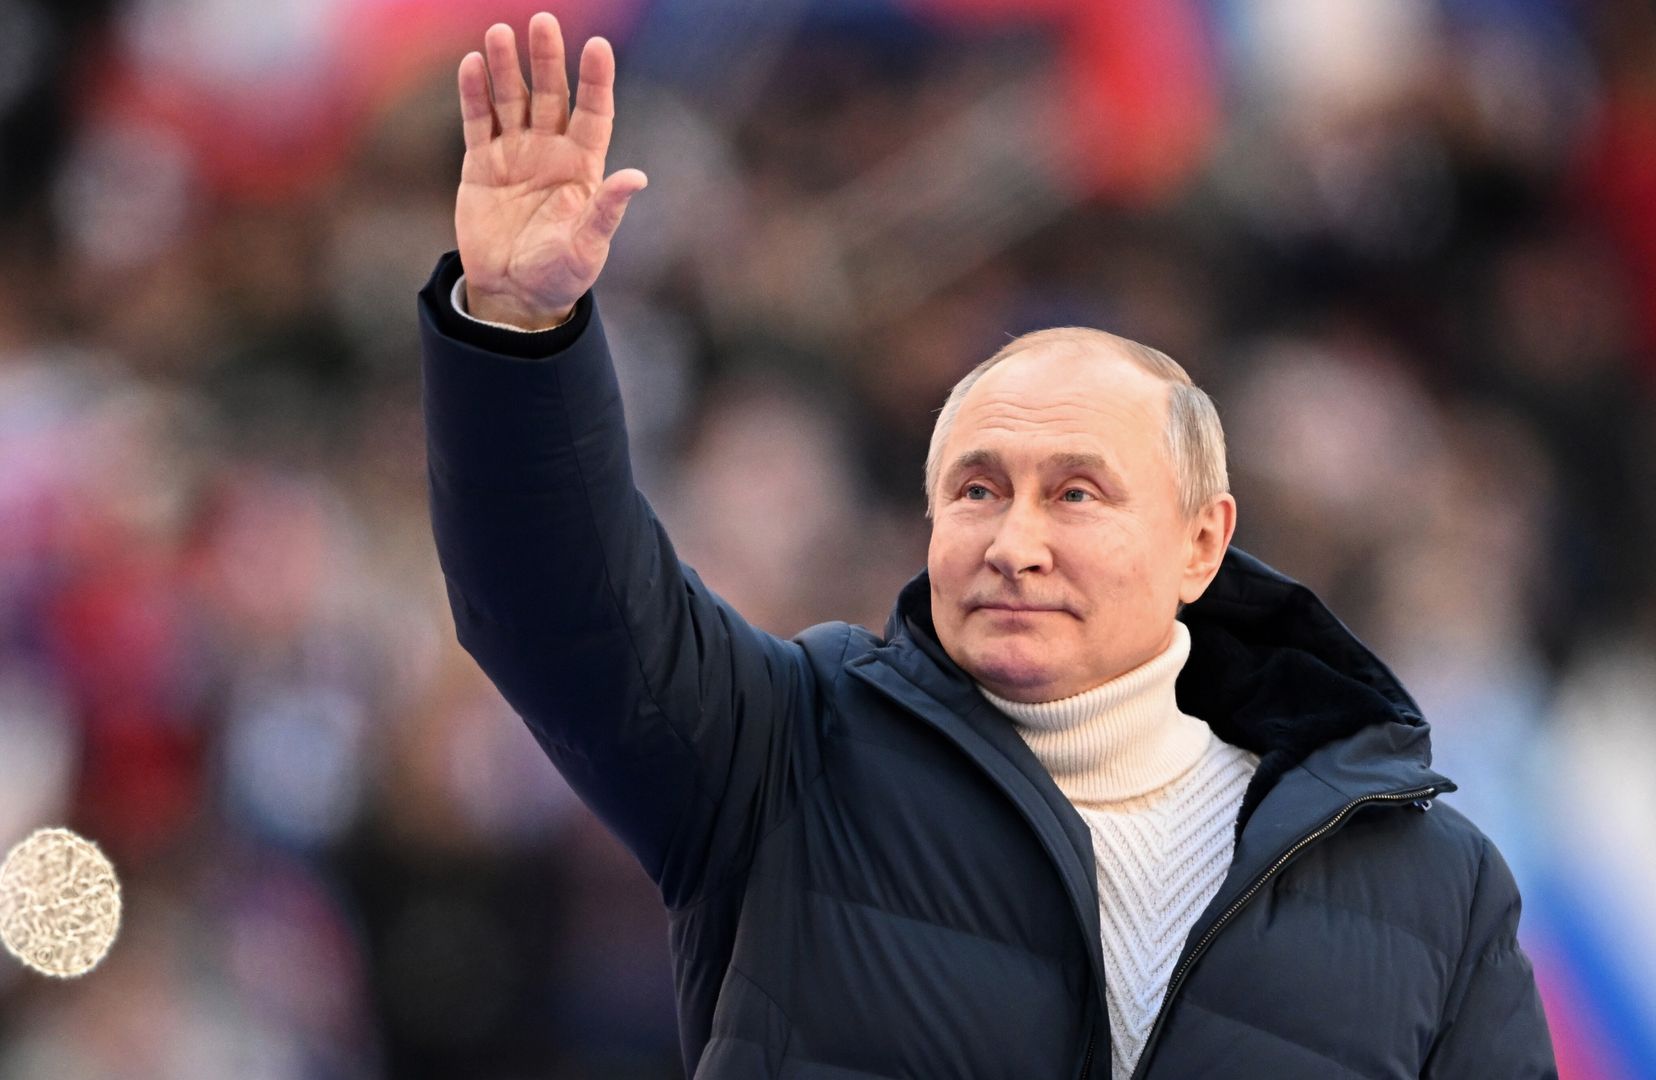 Taką tajemnicę skrywała kurtka Putina? Ekspert nie ma wątpliwości